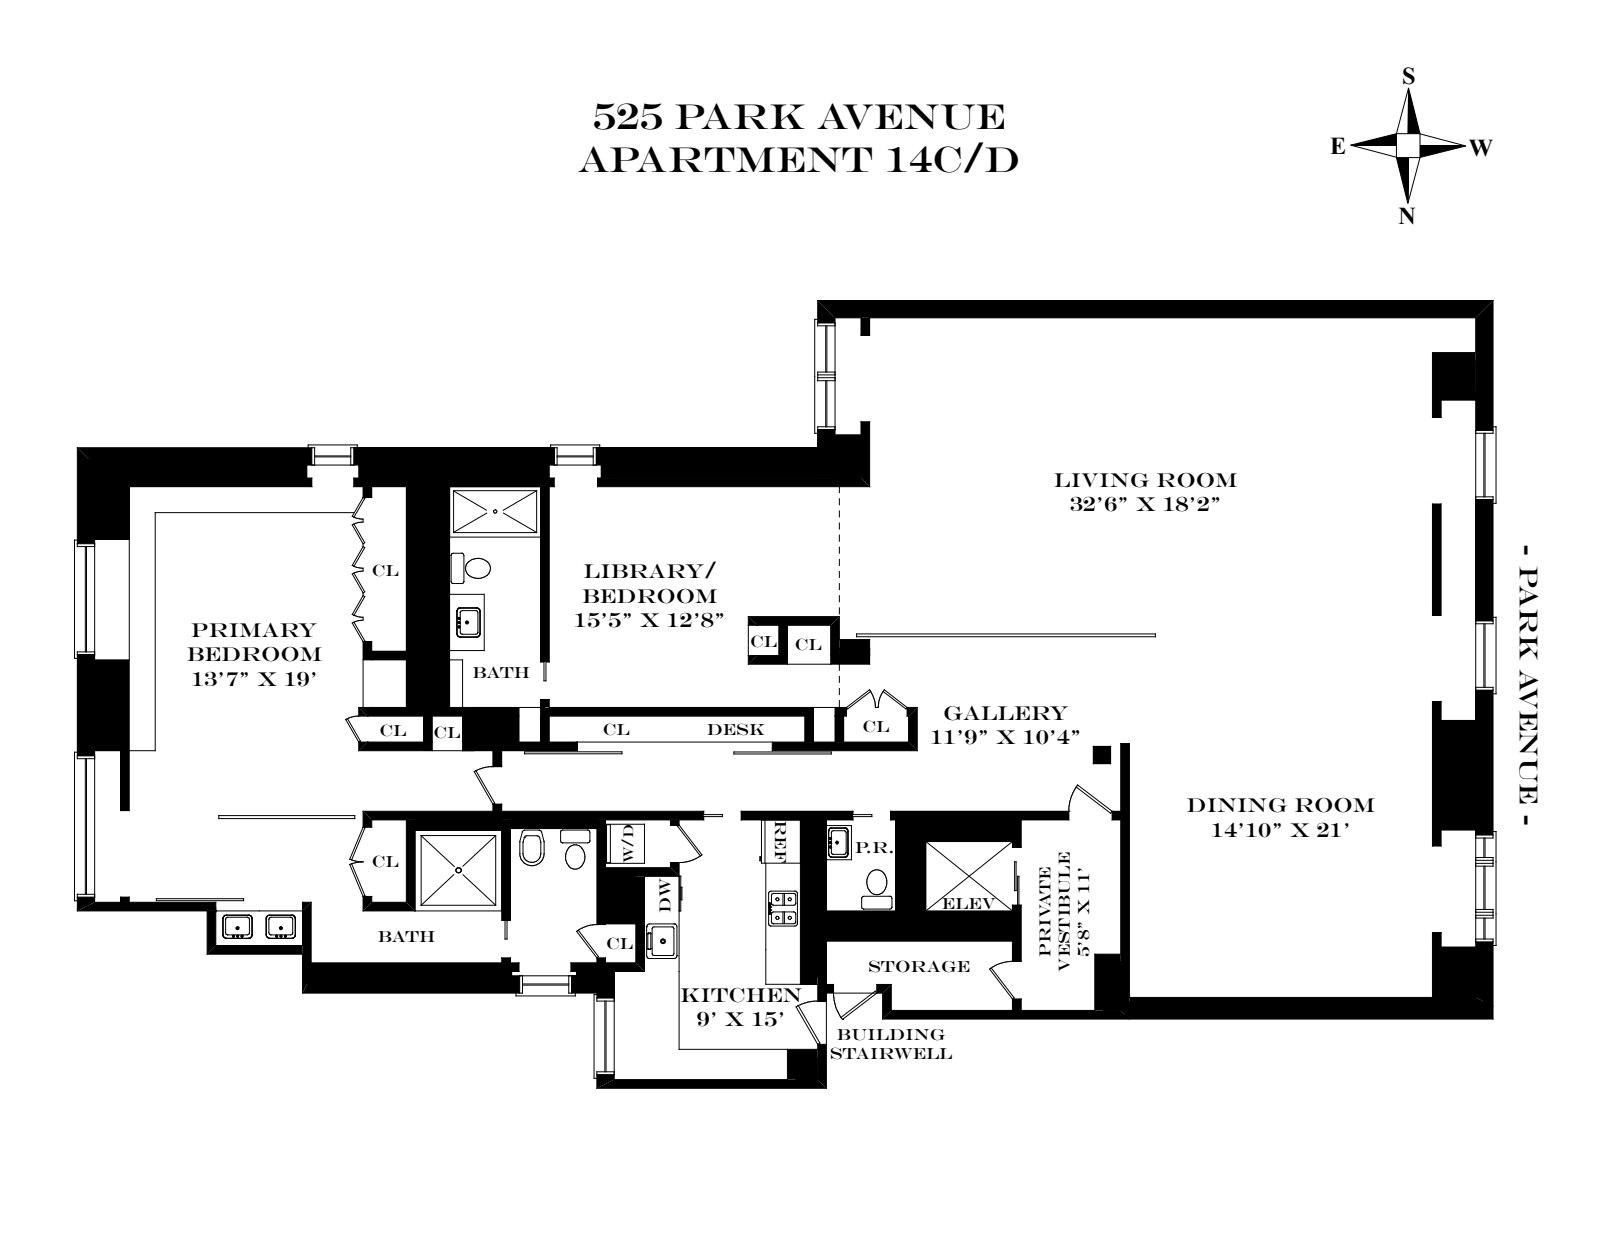 Floorplan for 525 Park Avenue, 14C/D